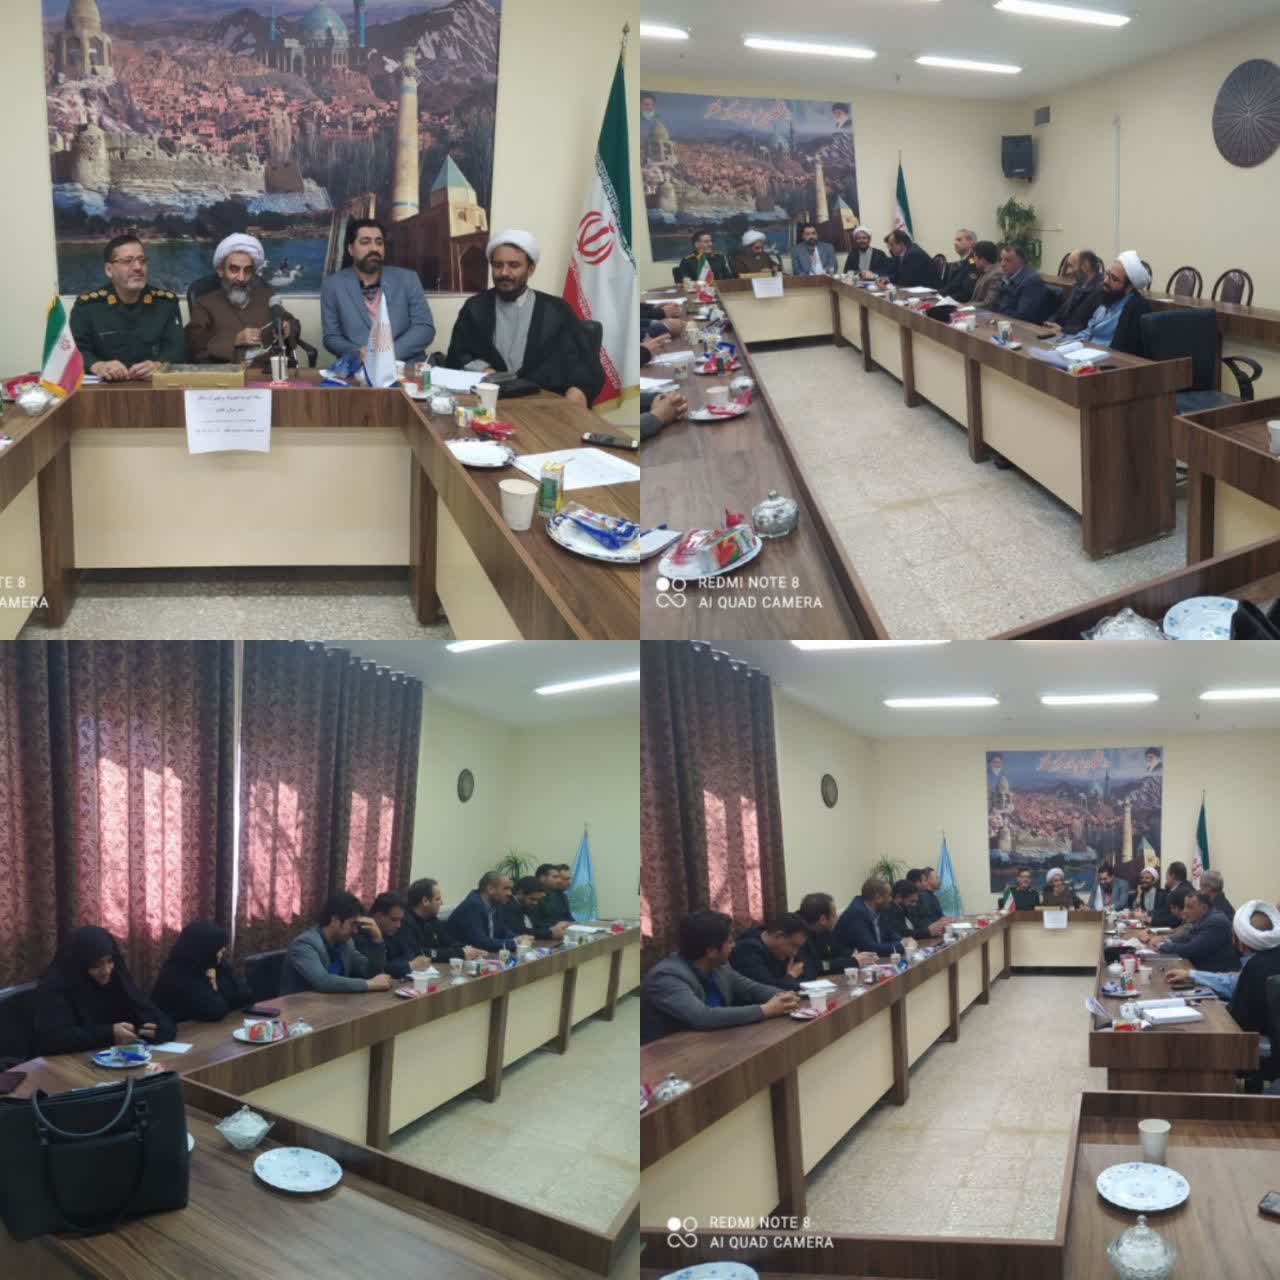 جلسه ستاد امر به معروف و نهی از منکرشهرستان نطنز با حضور اعضای ستاد در دانشگاه پیام نور نطنز برگزار شد